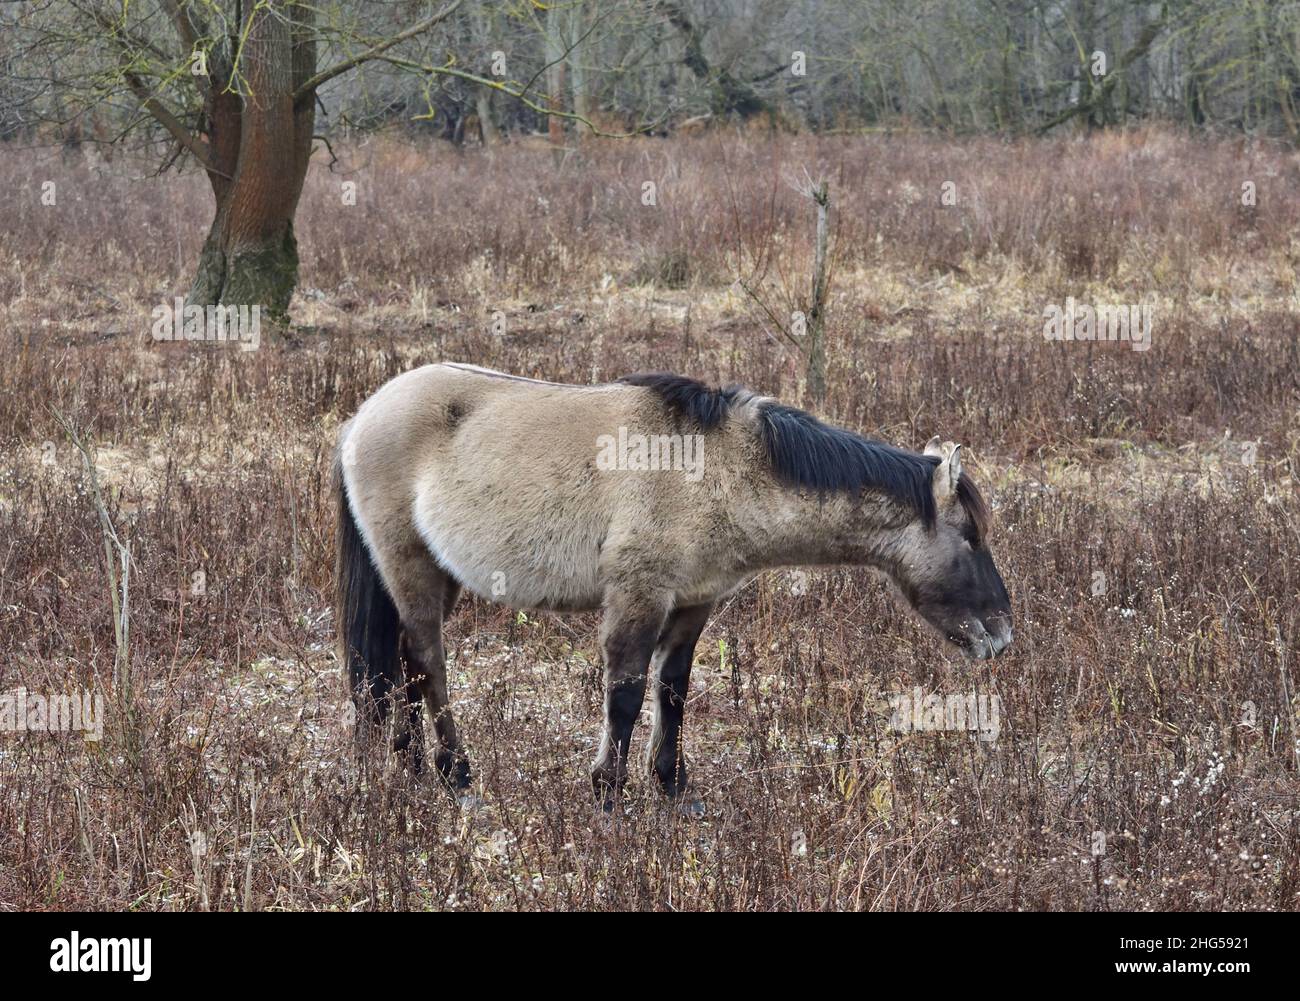 Konik broutage de chevaux sauvages dans la réserve naturelle des zones humides près de Marchegg, en Autriche Banque D'Images